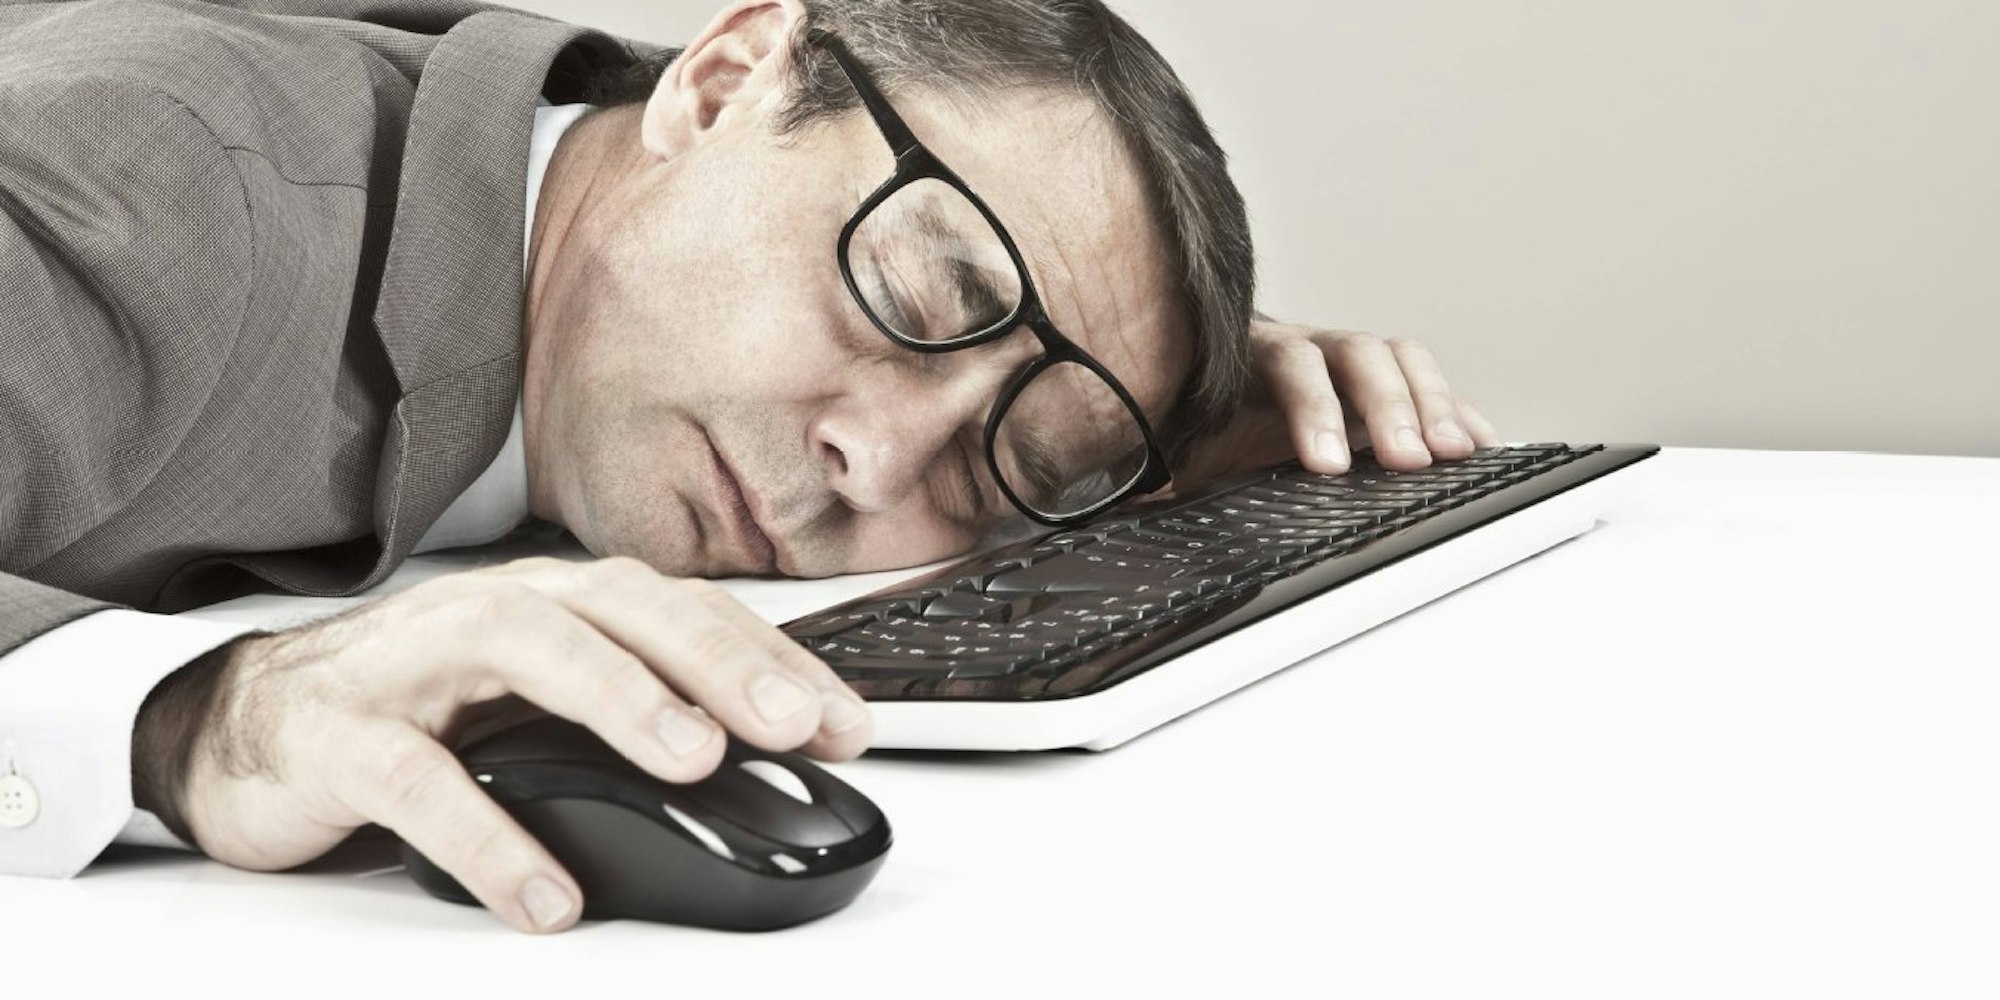 Einschlafen am Arbeitsplatz ist keine gute Idee, allerdings dürfte es in den meisten Fällen bei einer Abmahnung bleiben, wenn man nicht ständig Nickerchen hält.